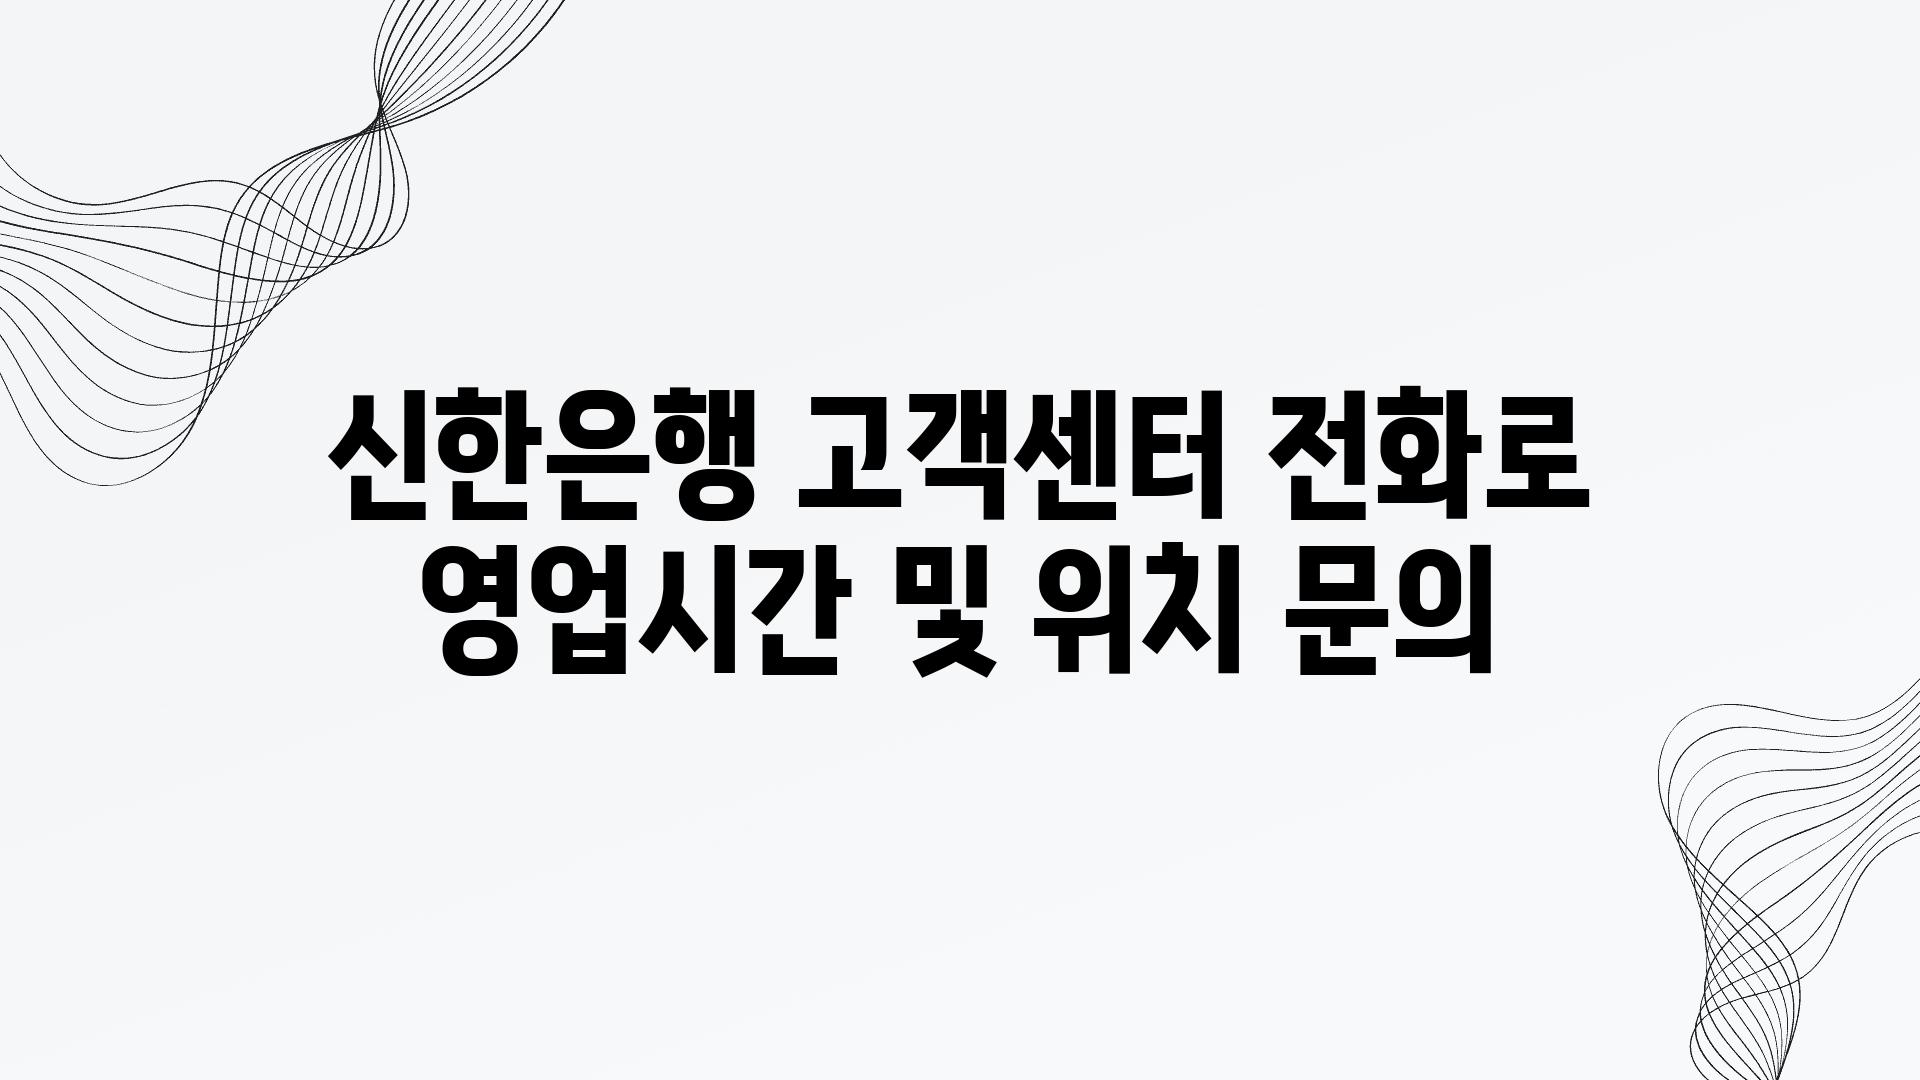 신한은행 고객센터 📞전화로 영업시간 및 위치 연락